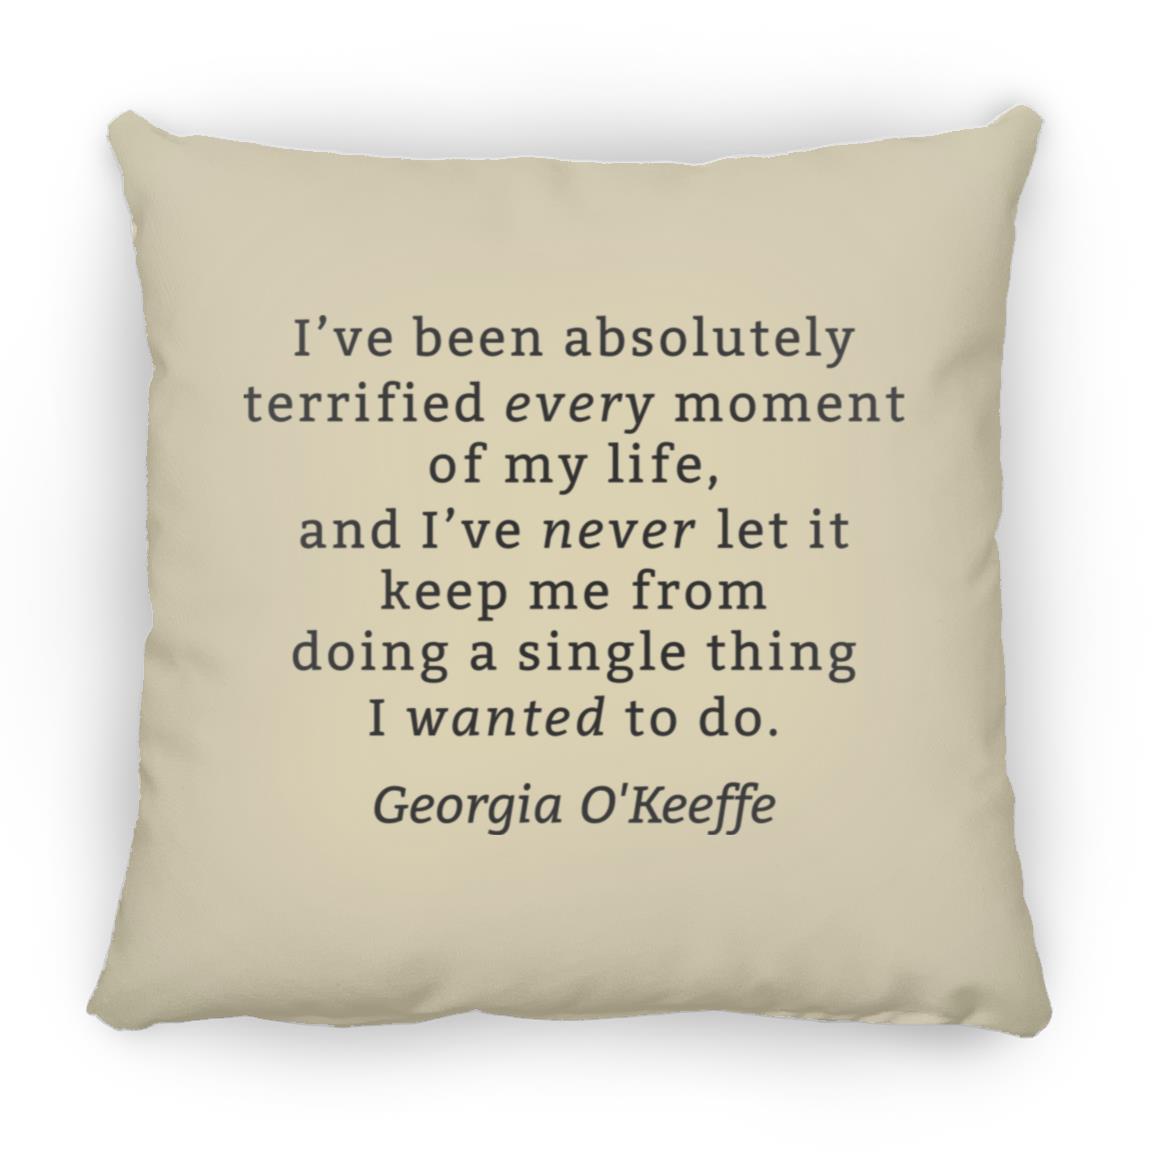 Georgia O'Keeffe Throw Pillow